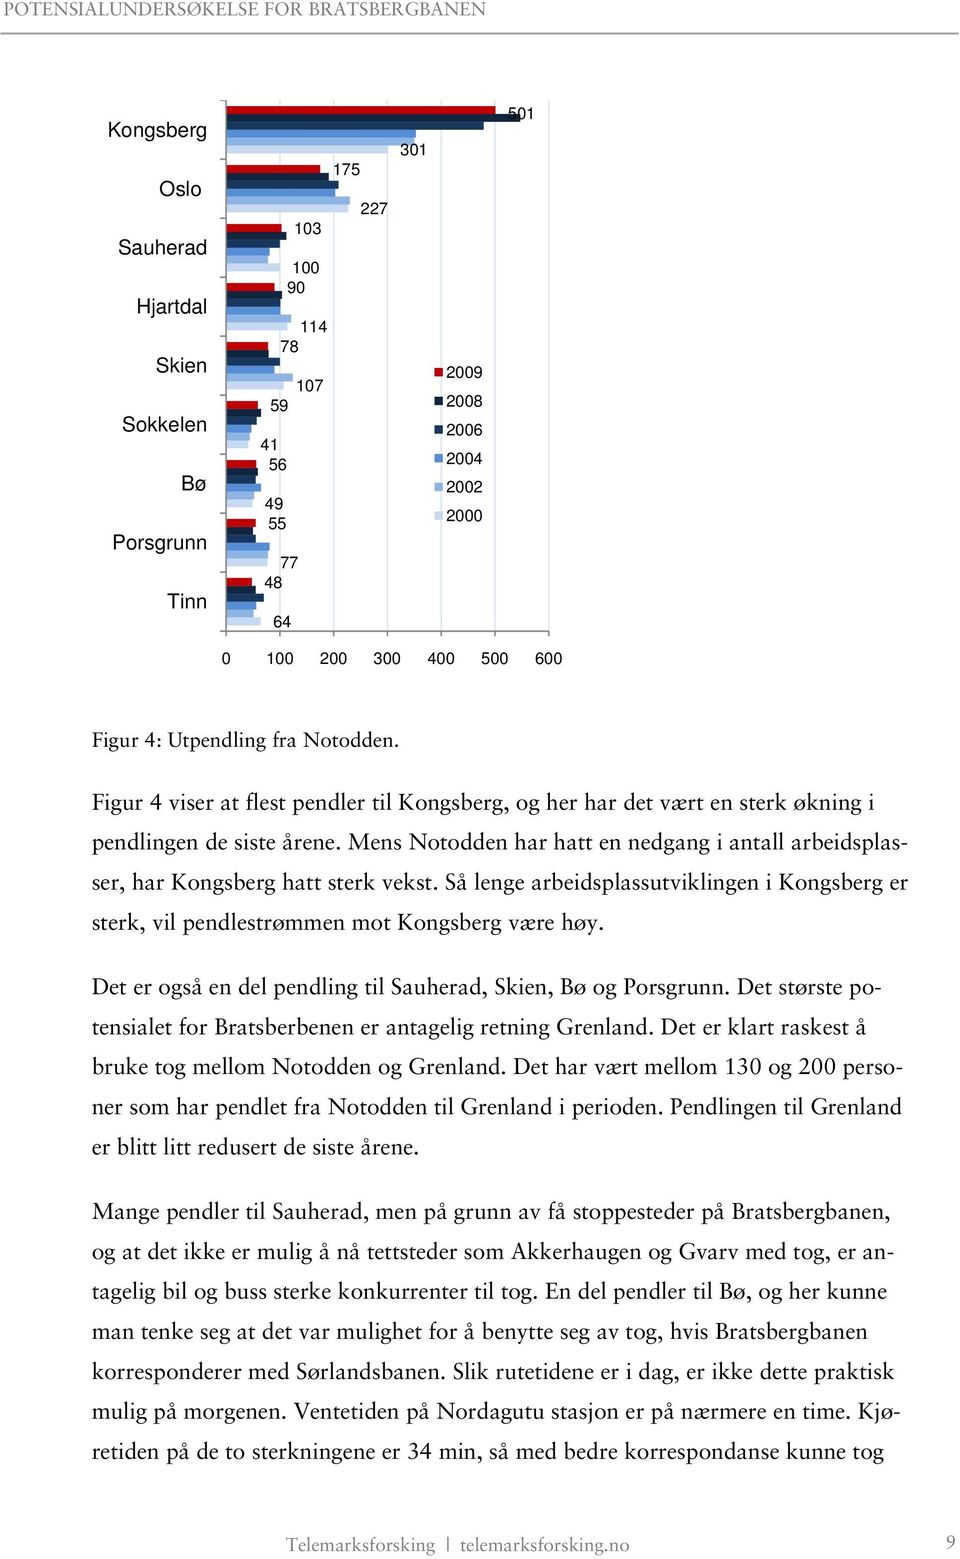 Mens Notodden har hatt en nedgang i antall arbeidsplasser, har Kongsberg hatt sterk vekst. Så lenge arbeidsplassutviklingen i Kongsberg er sterk, vil pendlestrømmen mot Kongsberg være høy.